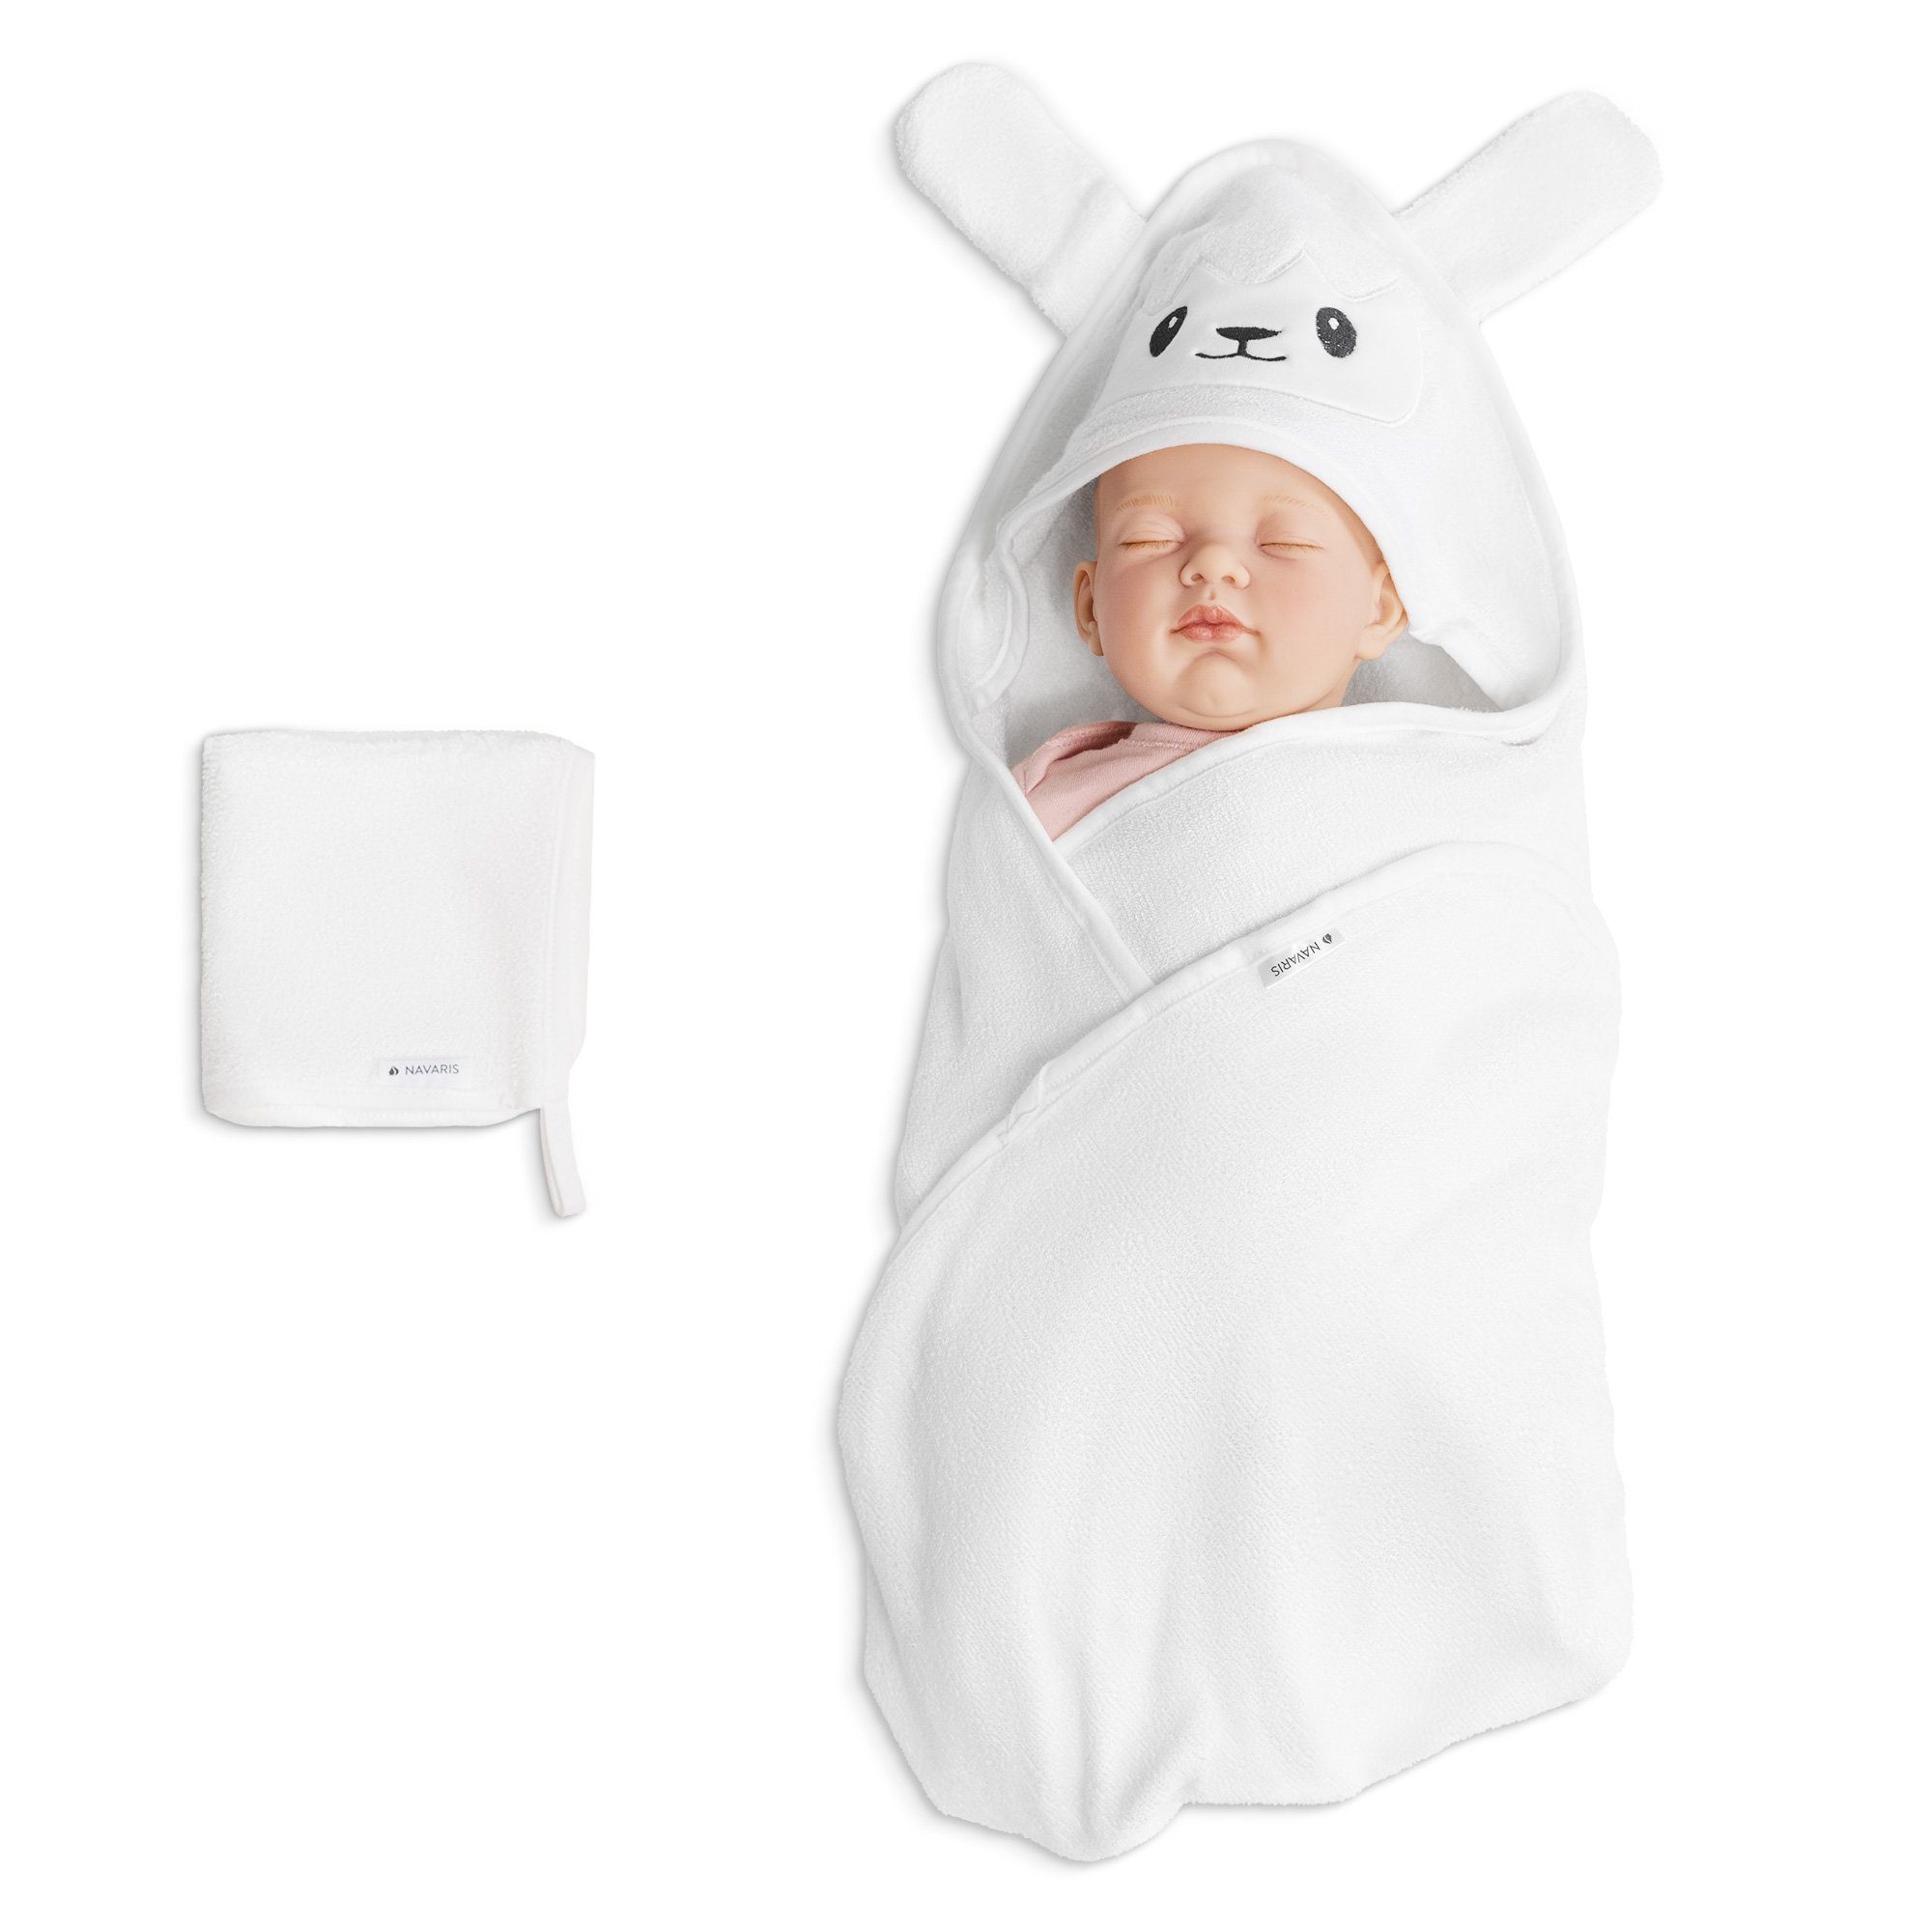 Baby Handtuch mit Kapuze für Neugeborene & Kleinkinder Motiv: Panda Soft Touch Baby Kapuzenhandtuch Unisex weiß schwarz Einheitsgröße 